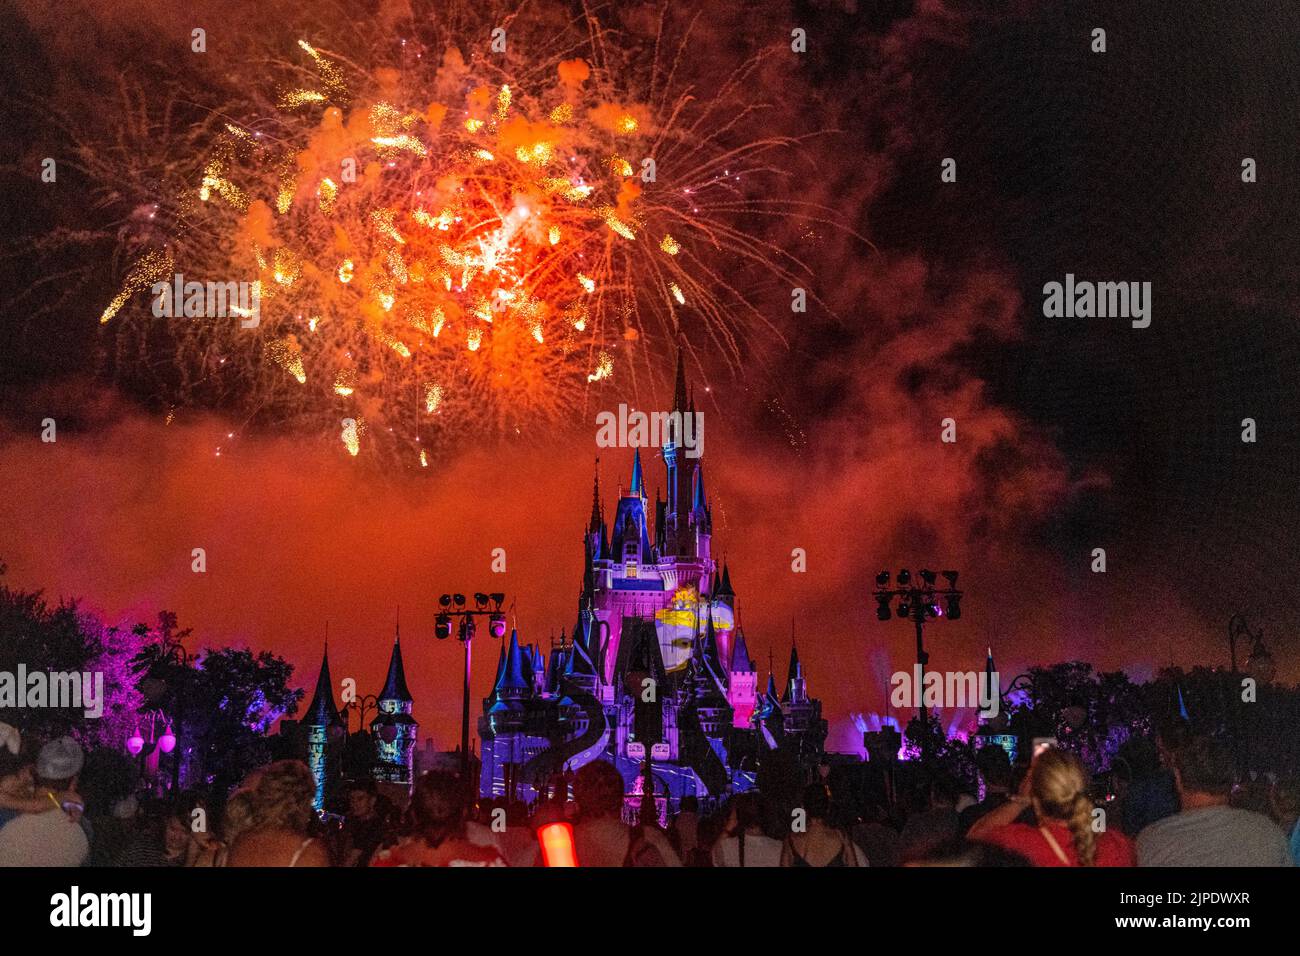 Spettacolo di fuochi d'artificio di notte. Il castello di Cenerentola è illuminato dalle luci. Foto Stock